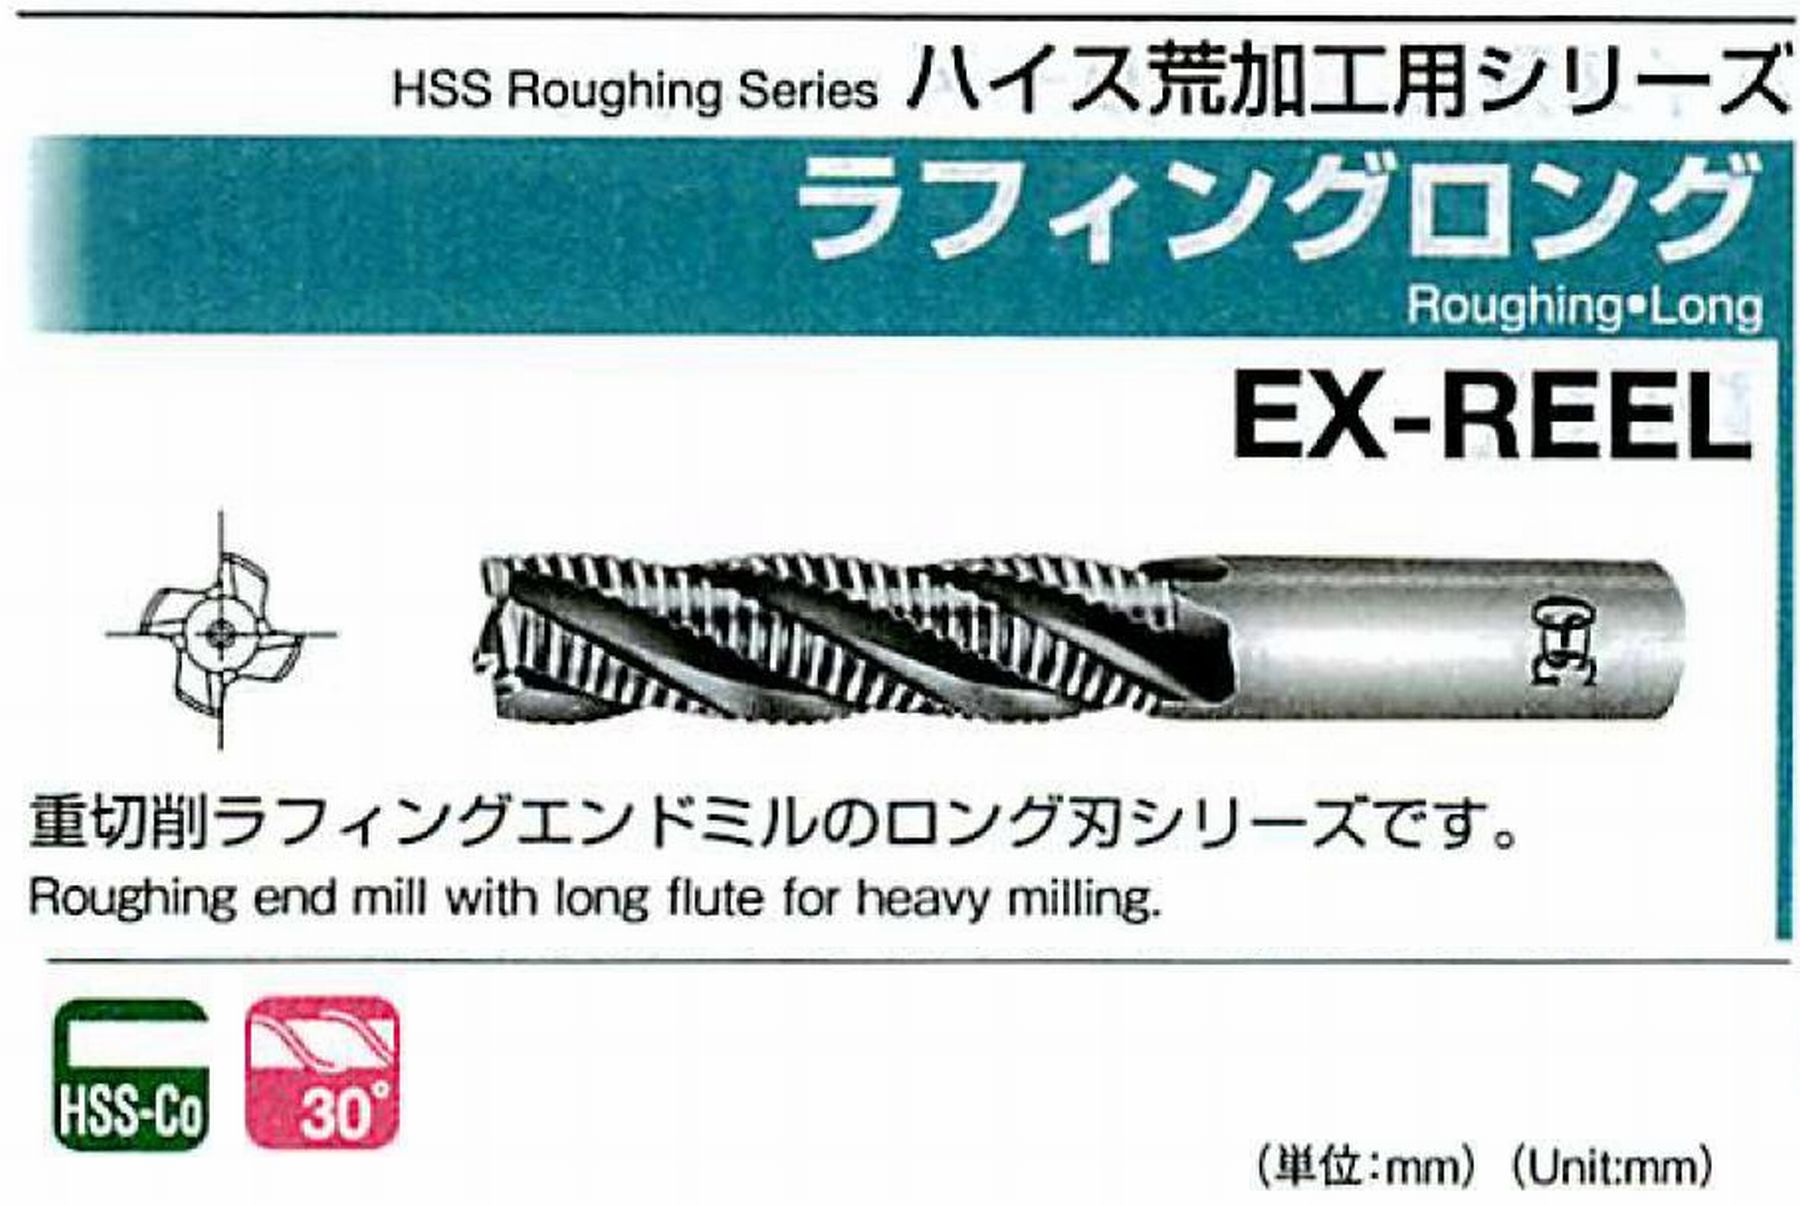 オーエスジー/OSG ラフィング ロング EX-REEL 外径43 全長227 刃長125 シャンク径42mm 刃数6